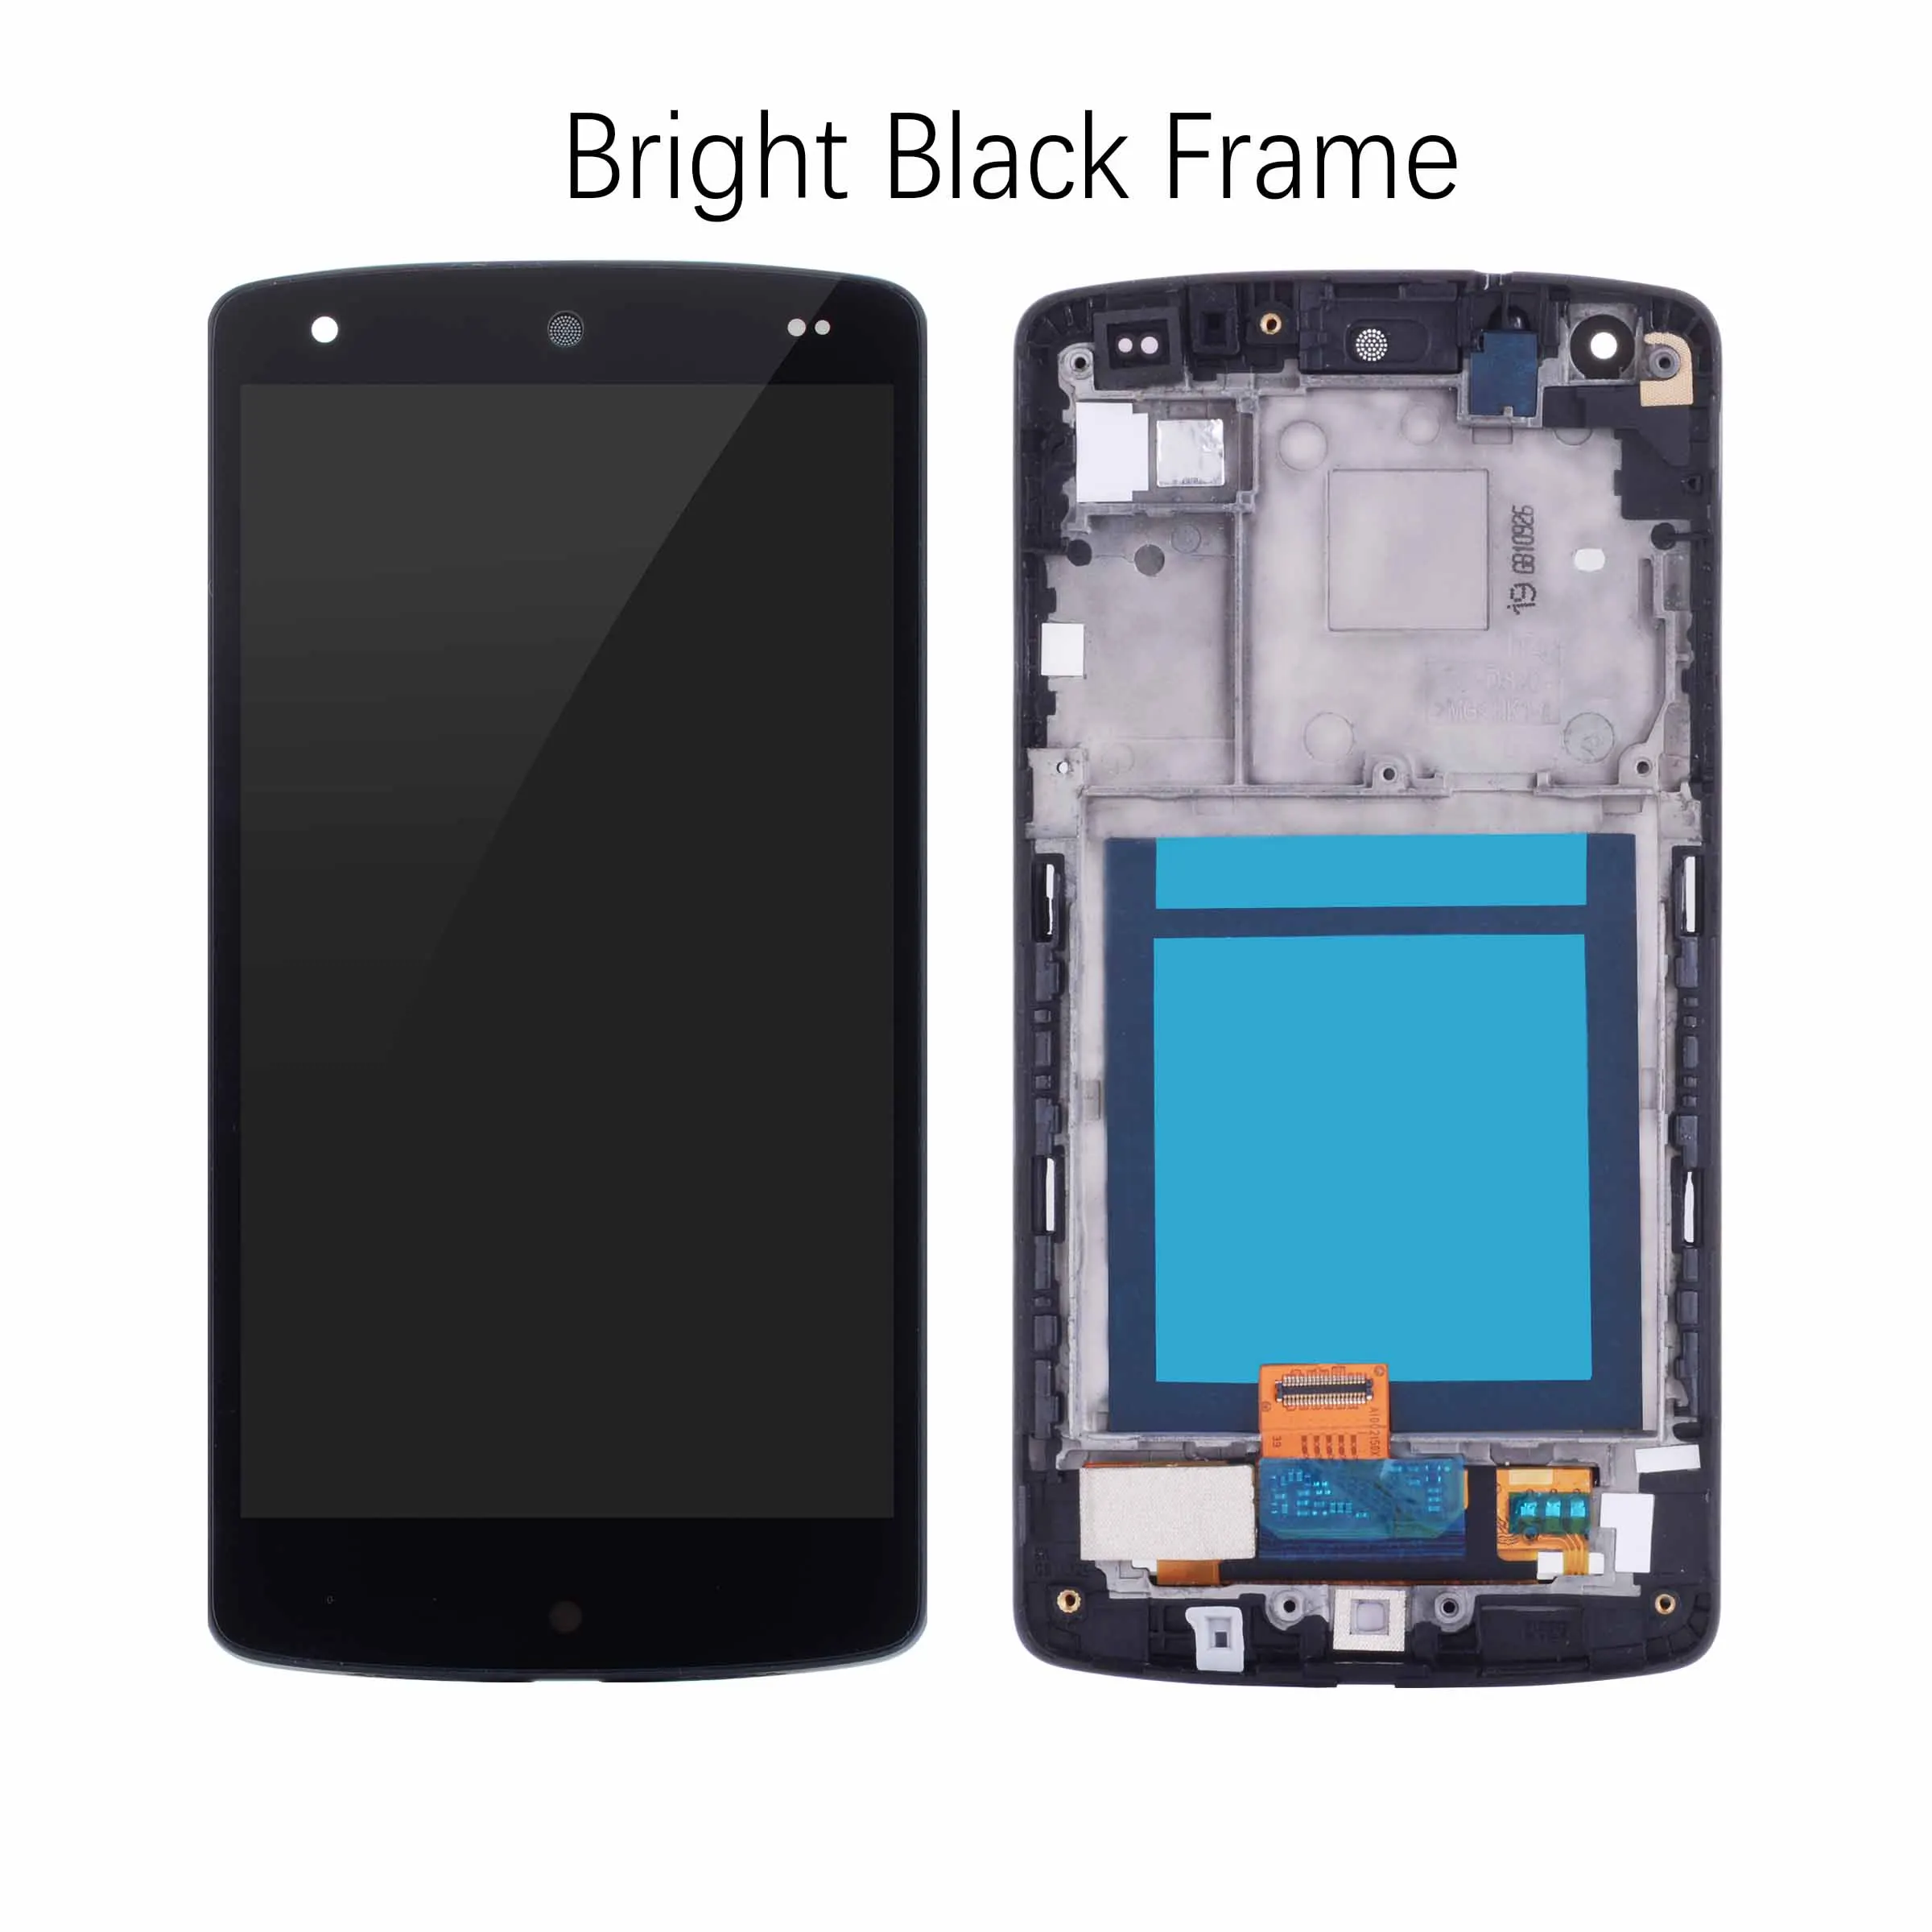 Дисплей для LG Nexus 5 D820 D821 LCD в сборе с тачскрином на рамке матовый черный Ярко черный черный красный - Цвет: Bright Black Frame